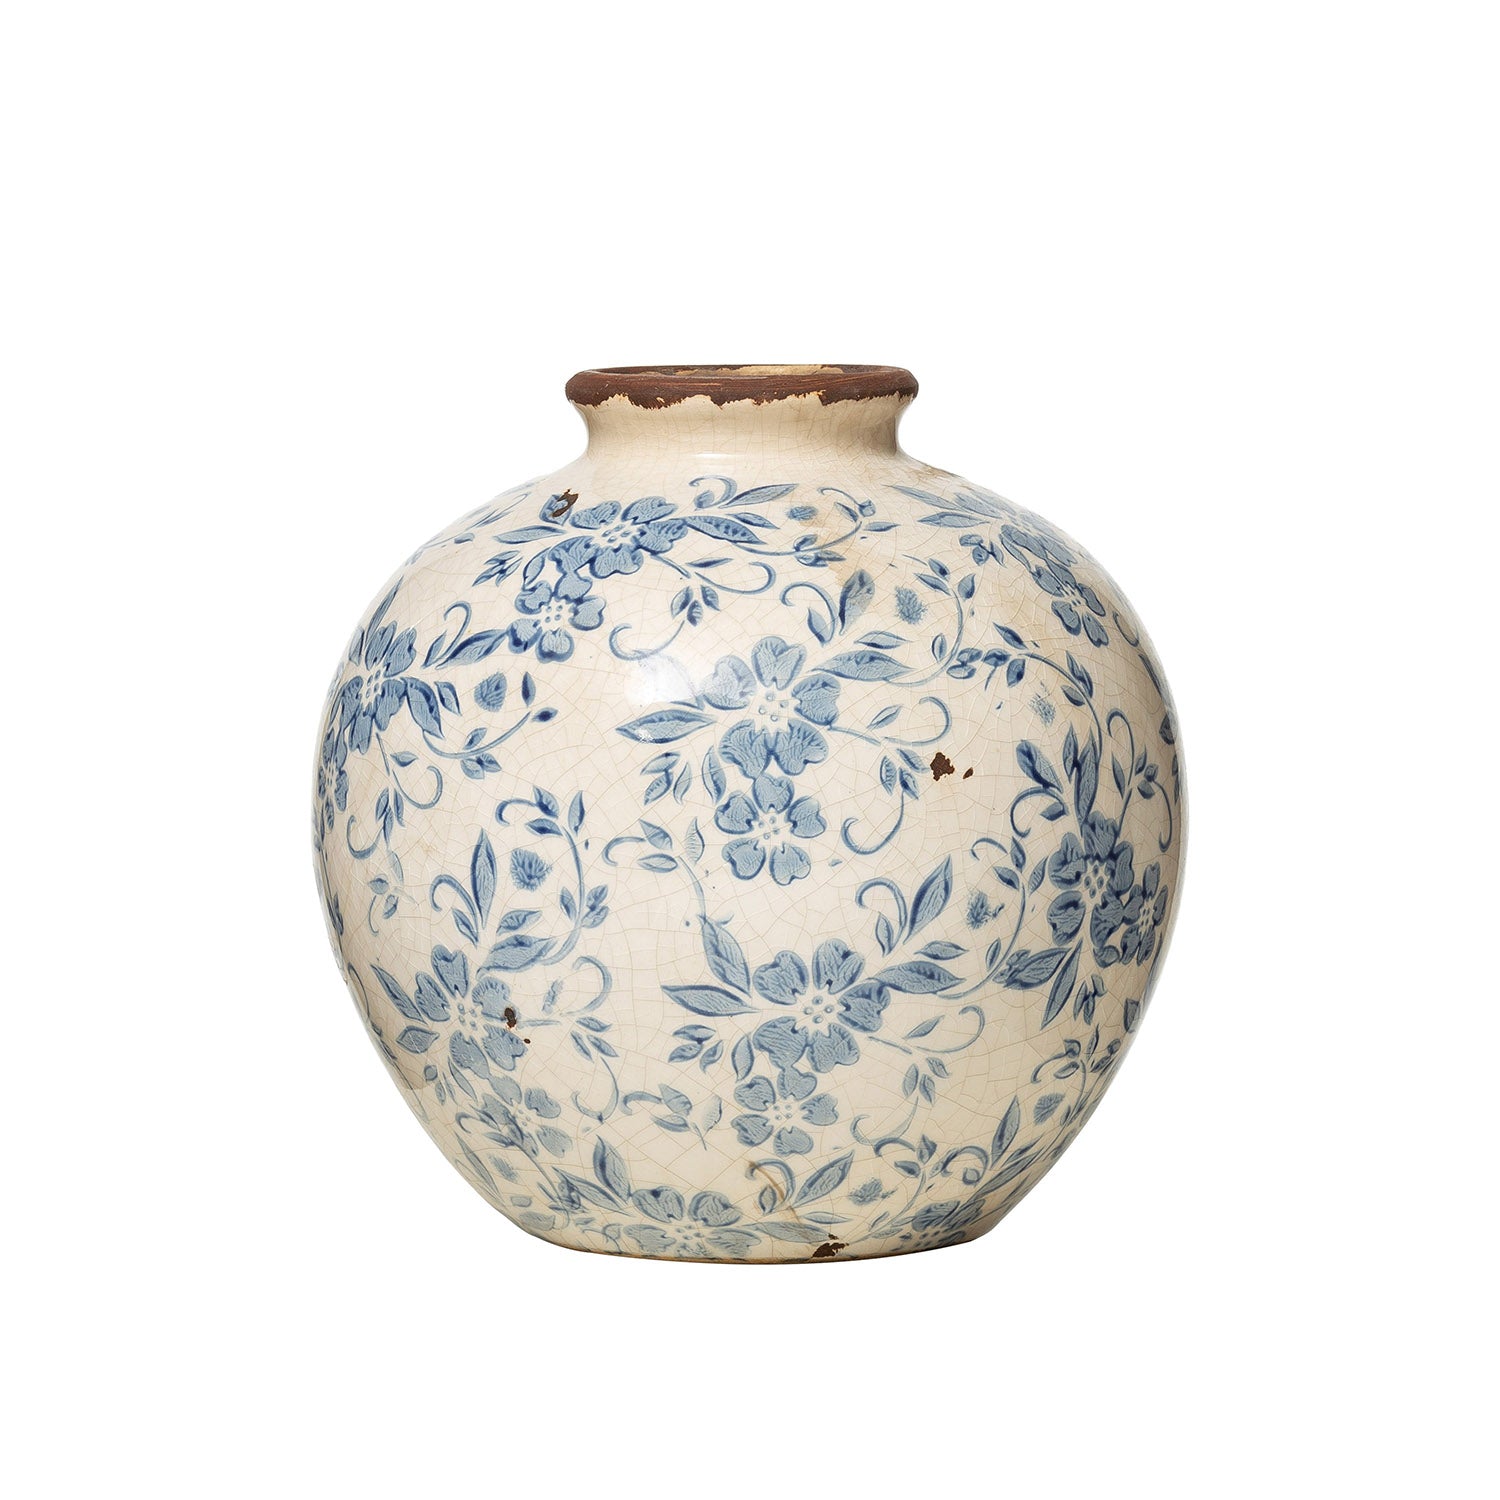 8" Round x 8"H Terra-cotta Vase w/ Transferware Pattern, Blue & White